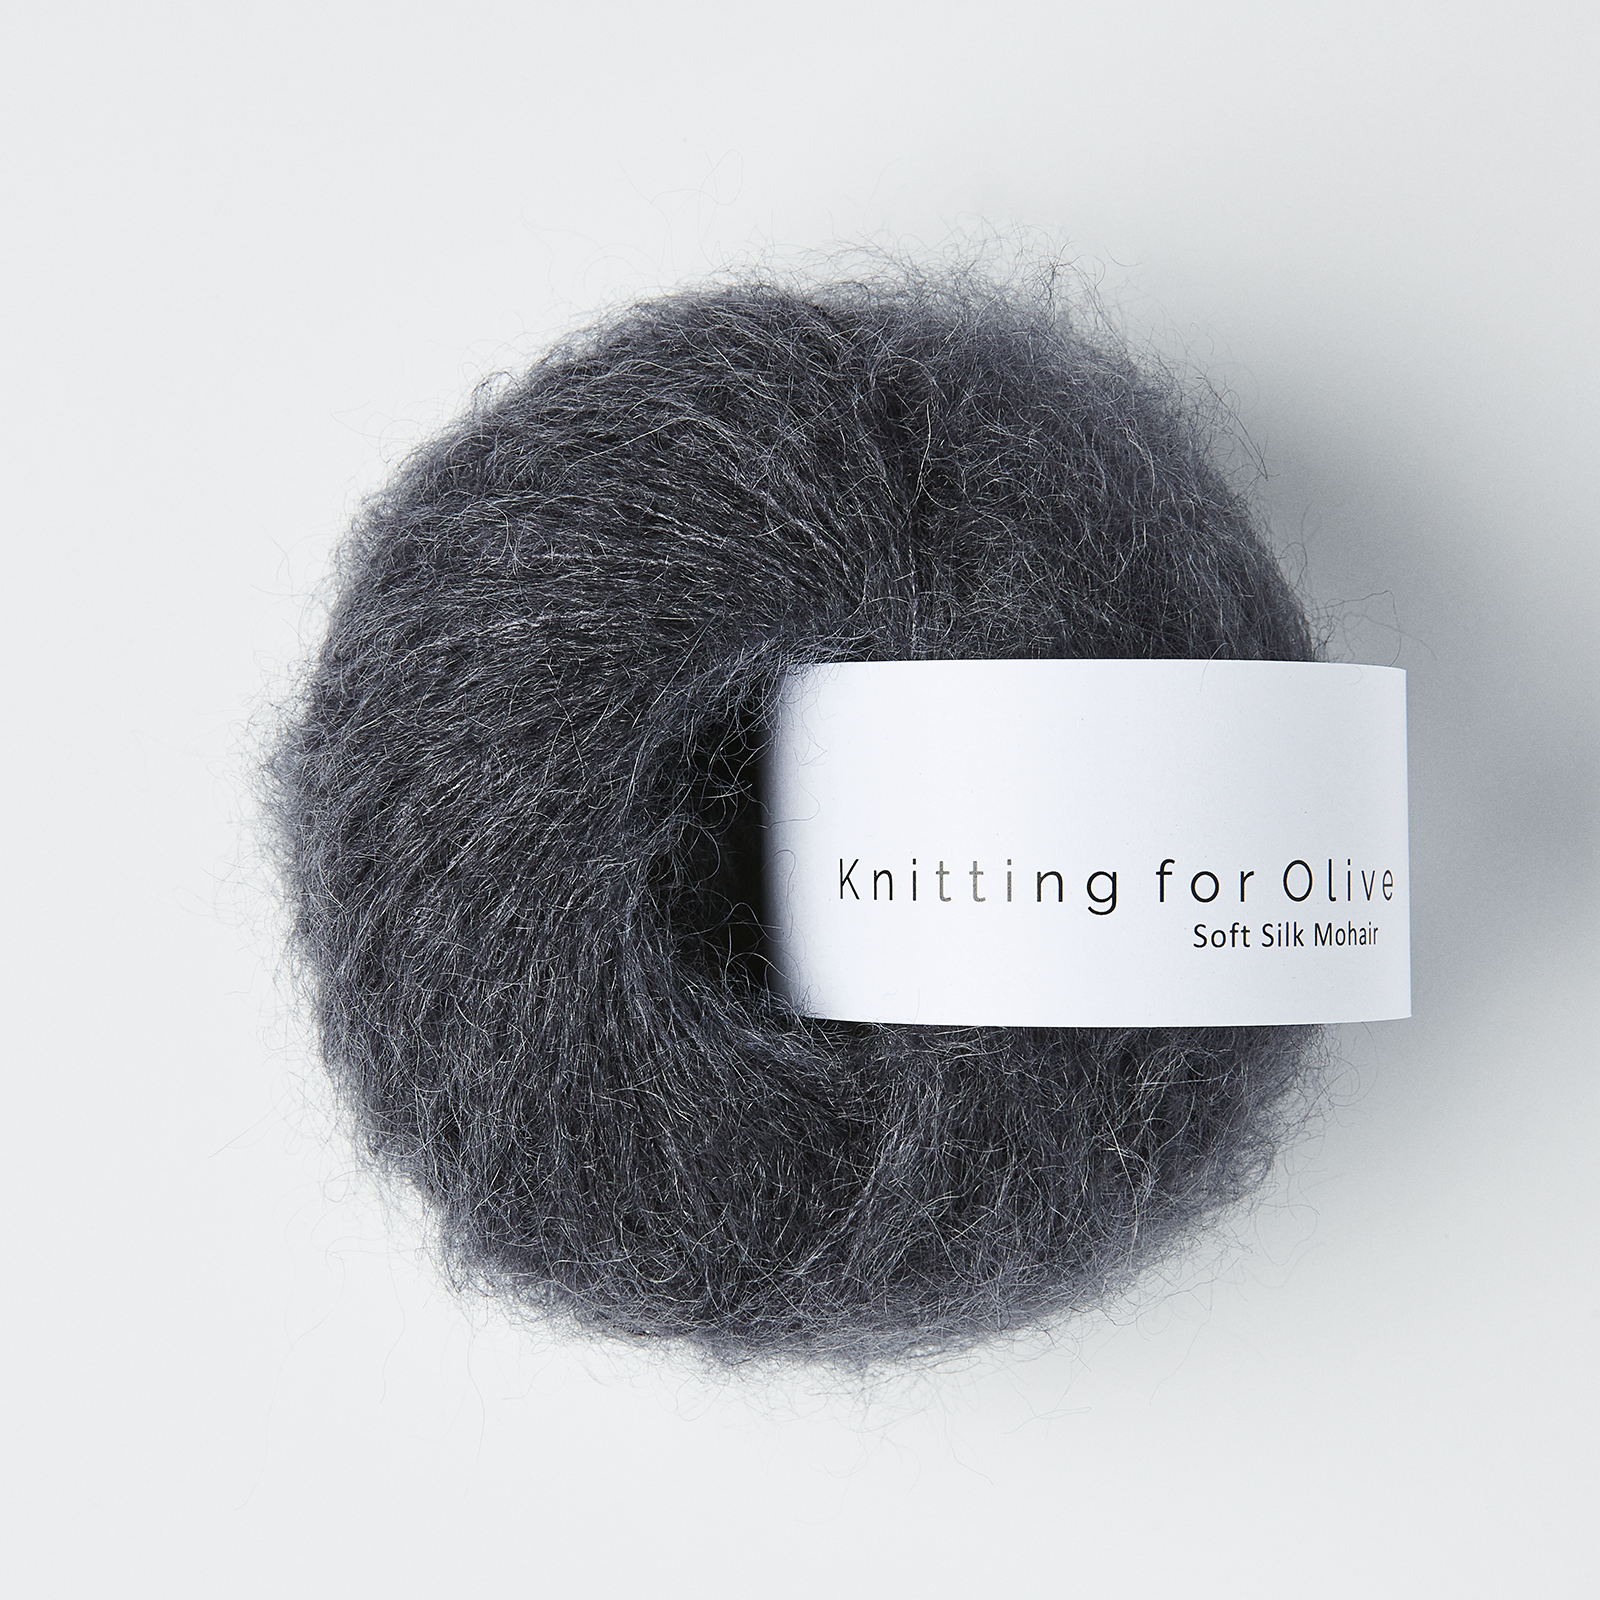 soft silk mohair knitting for olive | soft silk mohair: slate gray